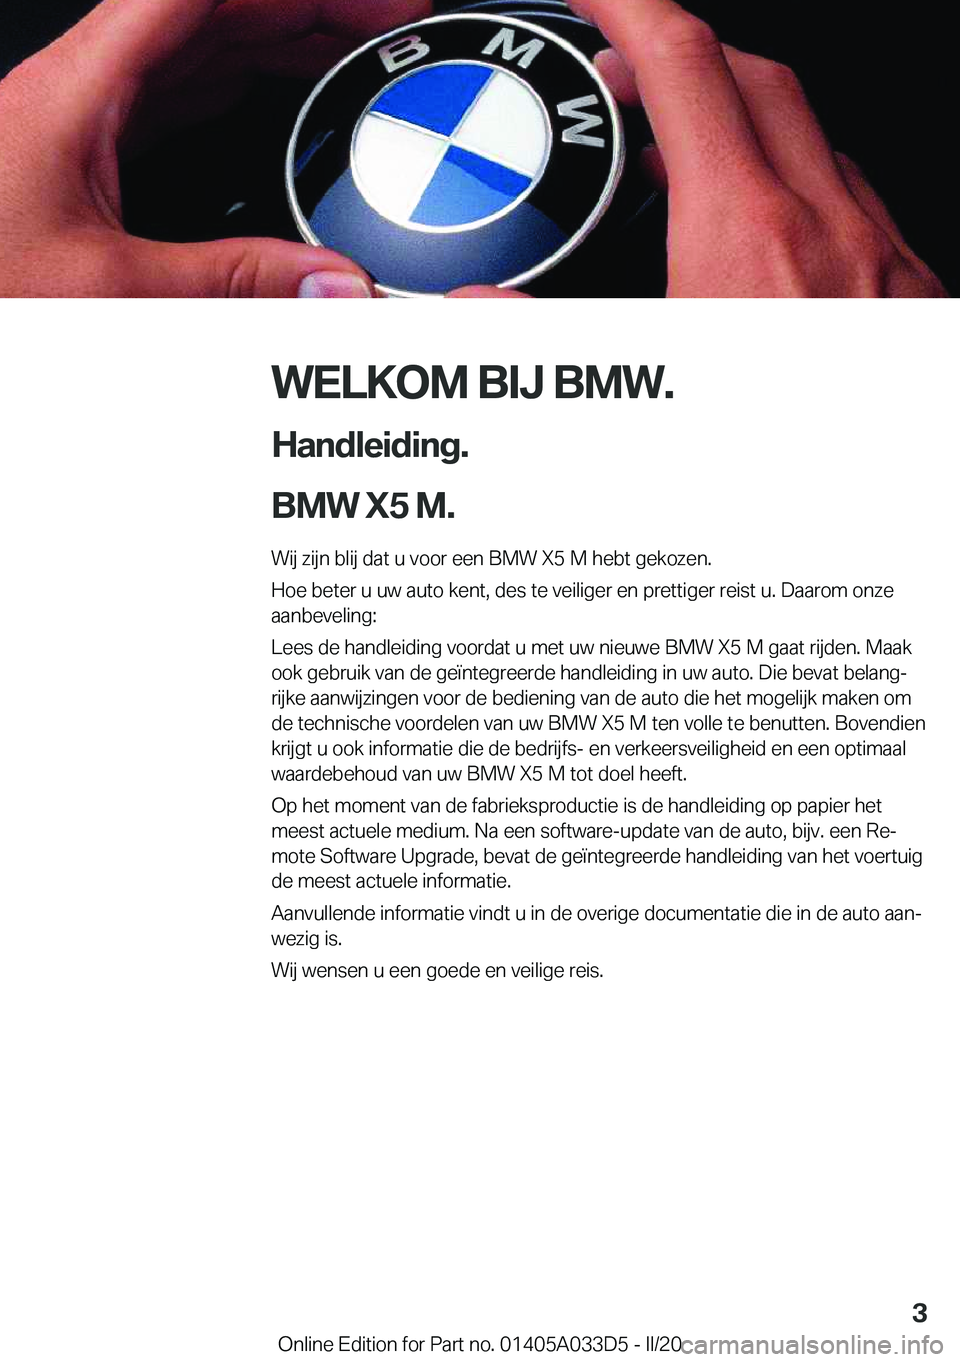 BMW X5 M 2020  Instructieboekjes (in Dutch) �W�E�L�K�O�M��B�I�J��B�M�W�.
�H�a�n�d�l�e�i�d�i�n�g�.
�B�M�W��X�5��M�. �W�i�j��z�i�j�n��b�l�i�j��d�a�t��u��v�o�o�r��e�e�n��B�M�W��X�5��M��h�e�b�t��g�e�k�o�z�e�n�.
�H�o�e��b�e�t�e�r��u